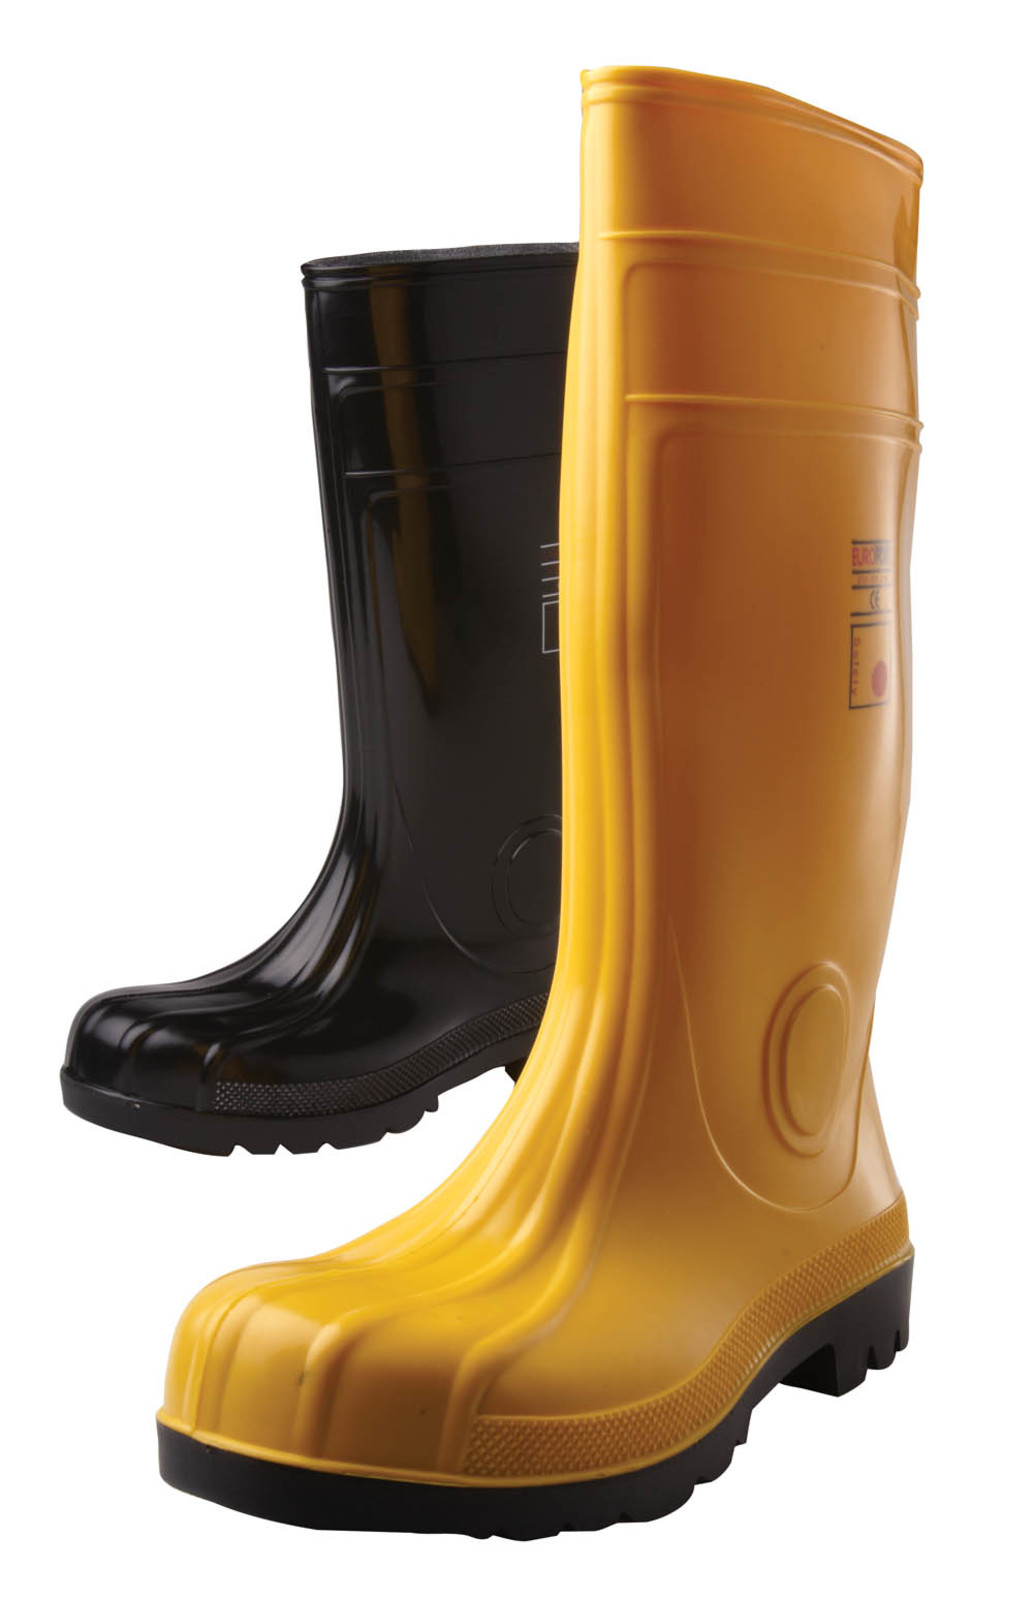 Gumáky Boots Eurofort  S5 - veľkosť: 43, farba: žltá